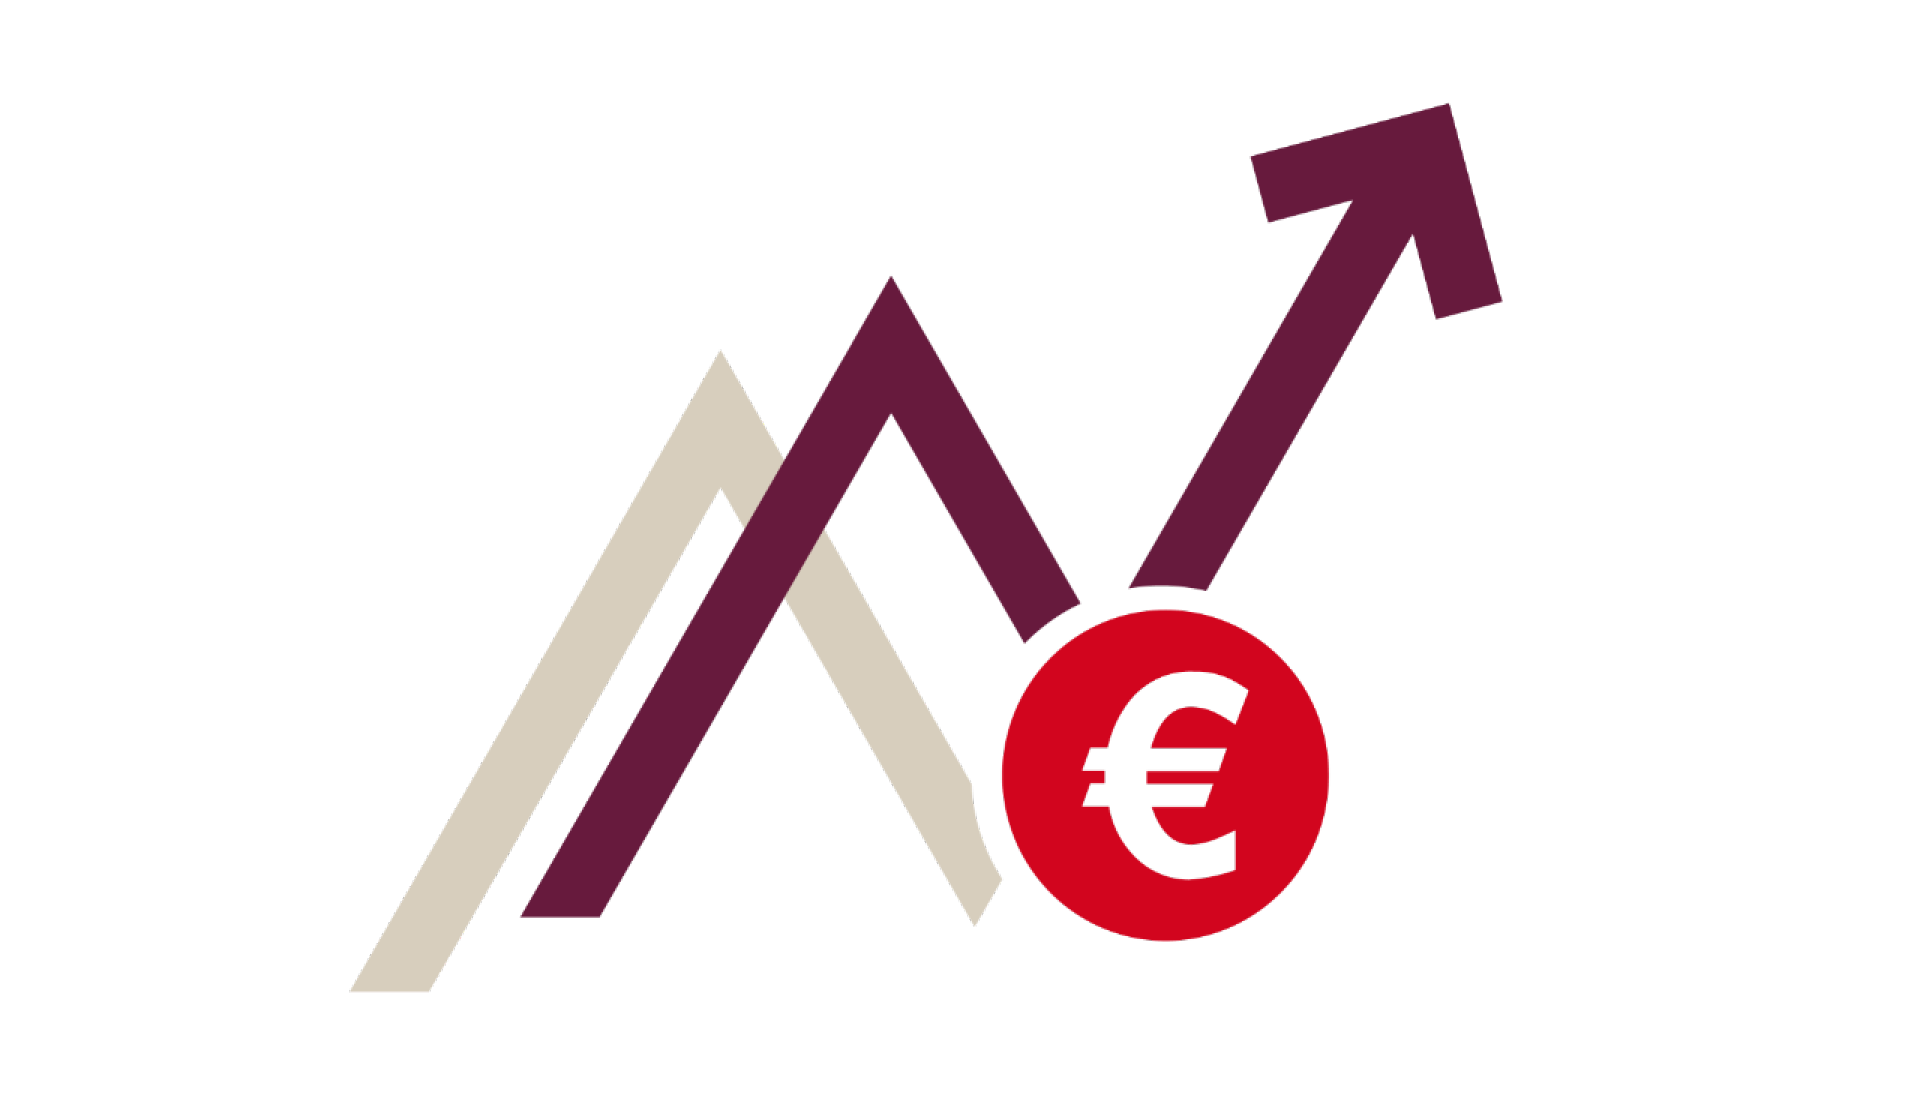 Eine Illustration, die zwei Kurven anzeigt, eine davon ist dunkelrot und bildet einen Pfeil nach rechts oben. Davor steht ein rotes Eurozeichen.